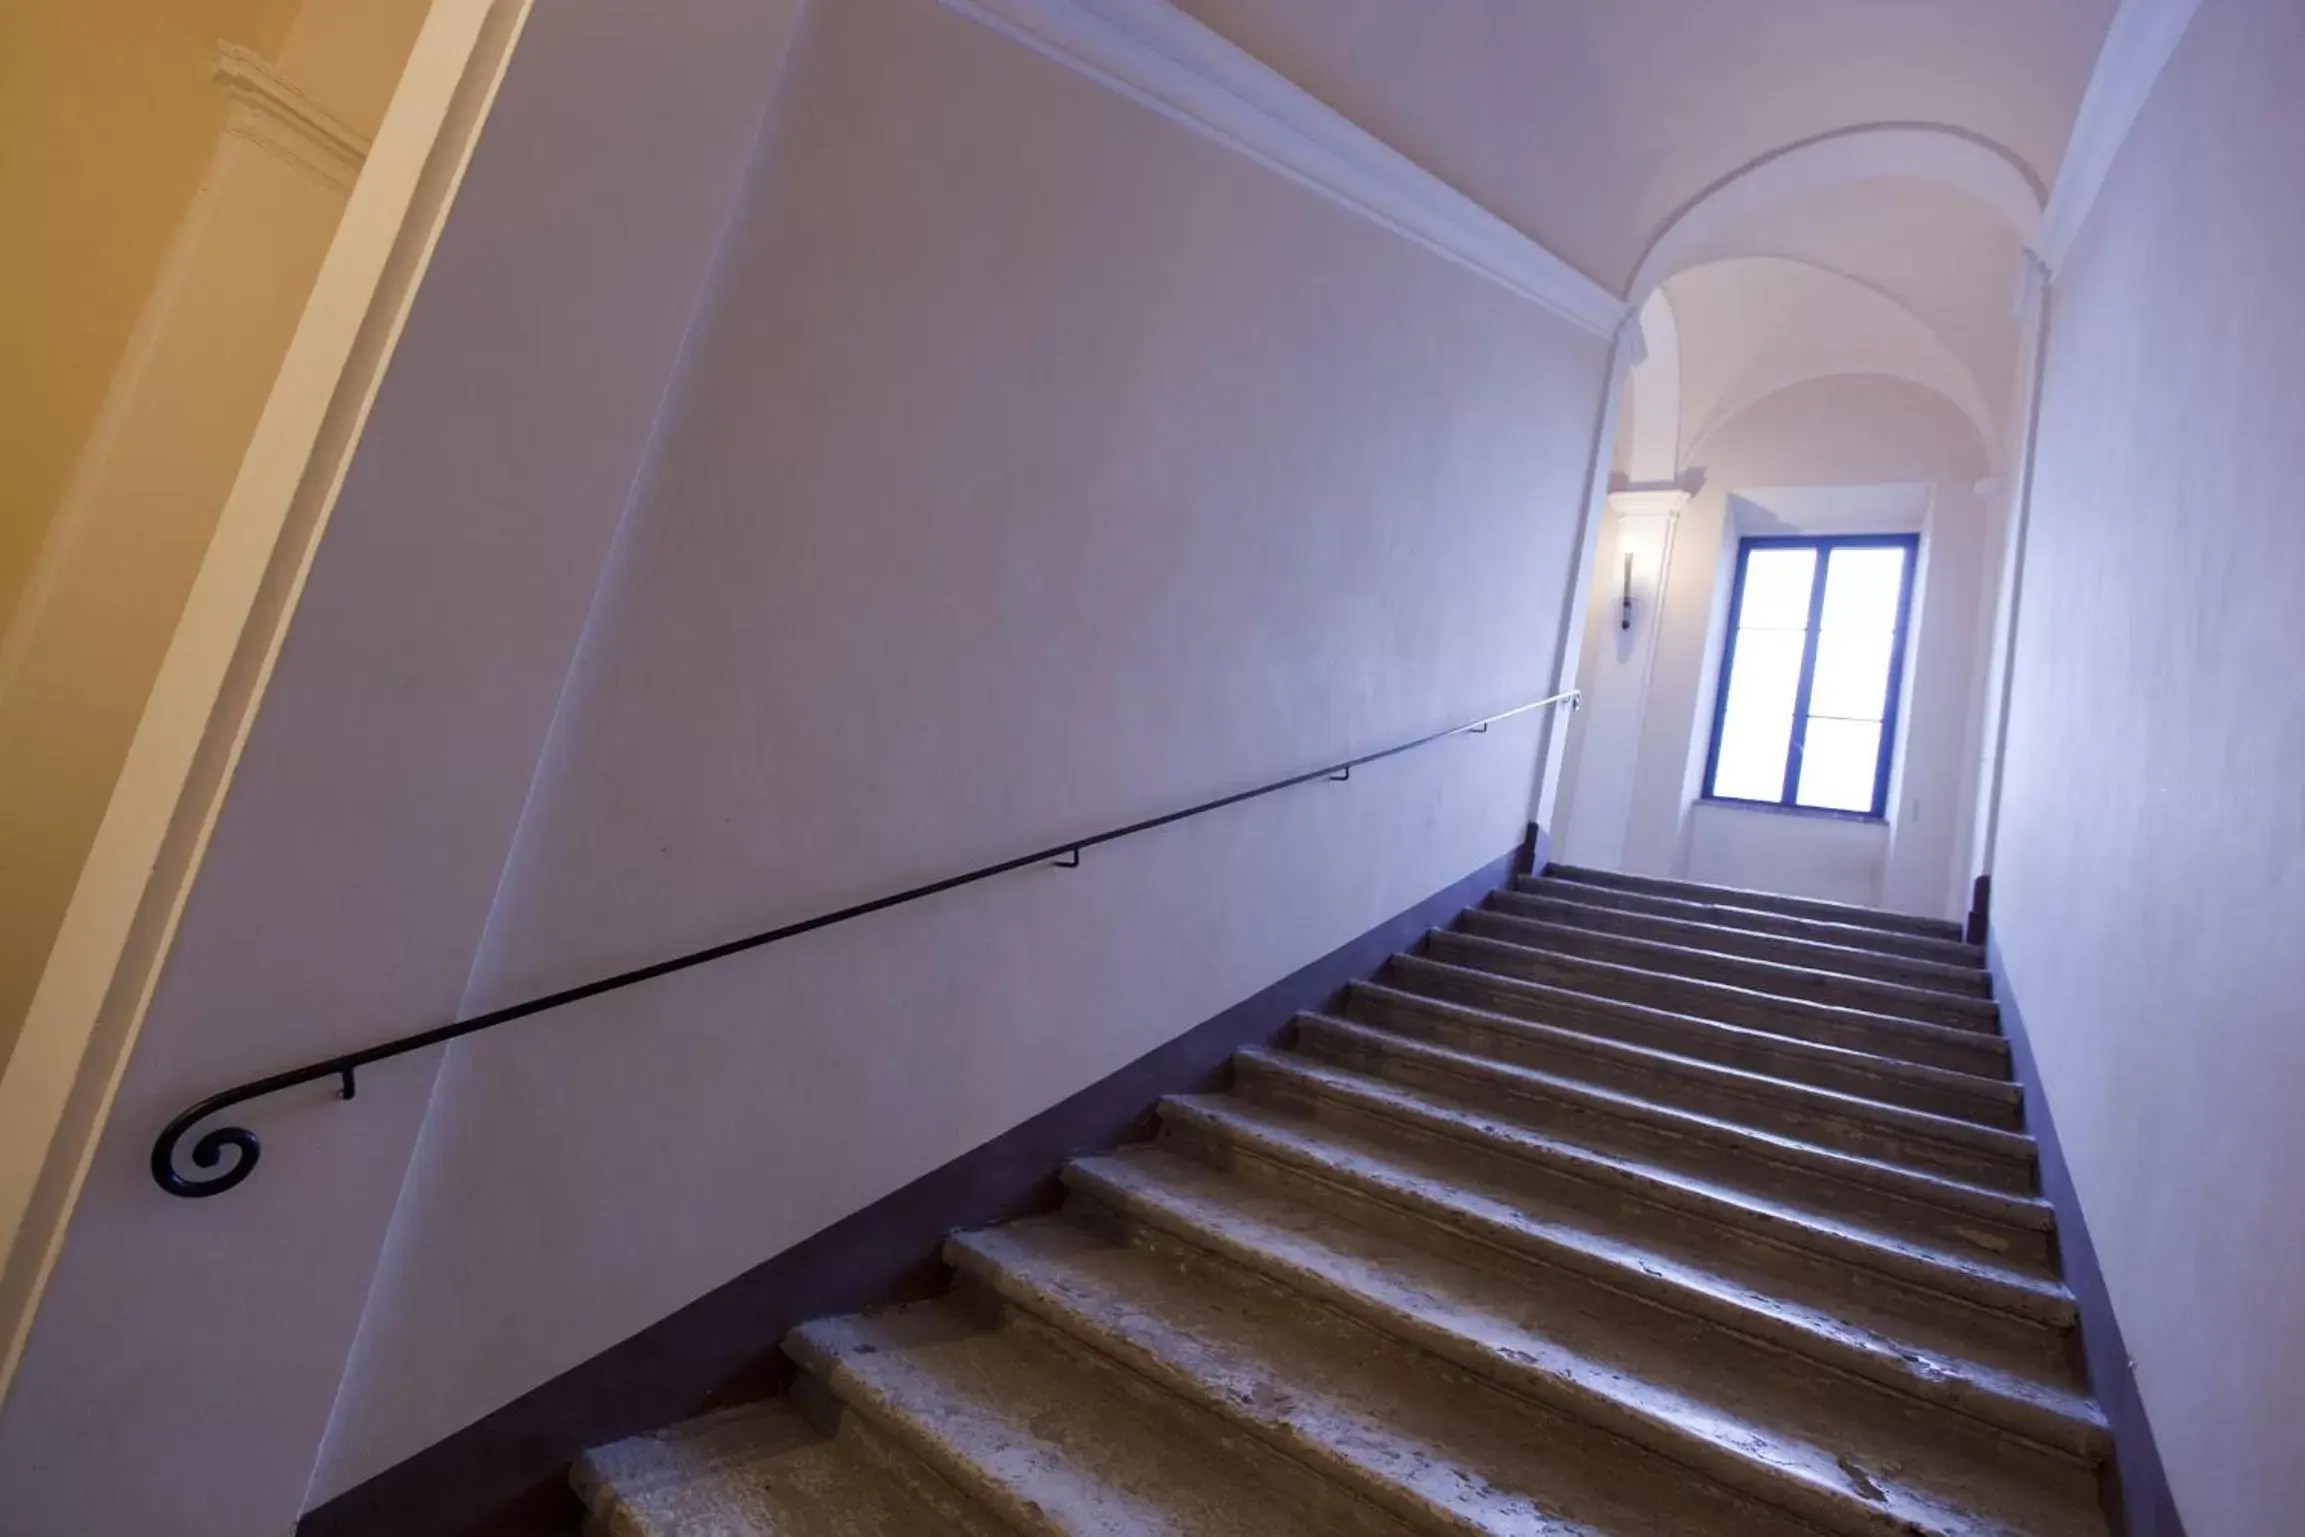 Day, Facade/Entrance in Palazzo Carletti